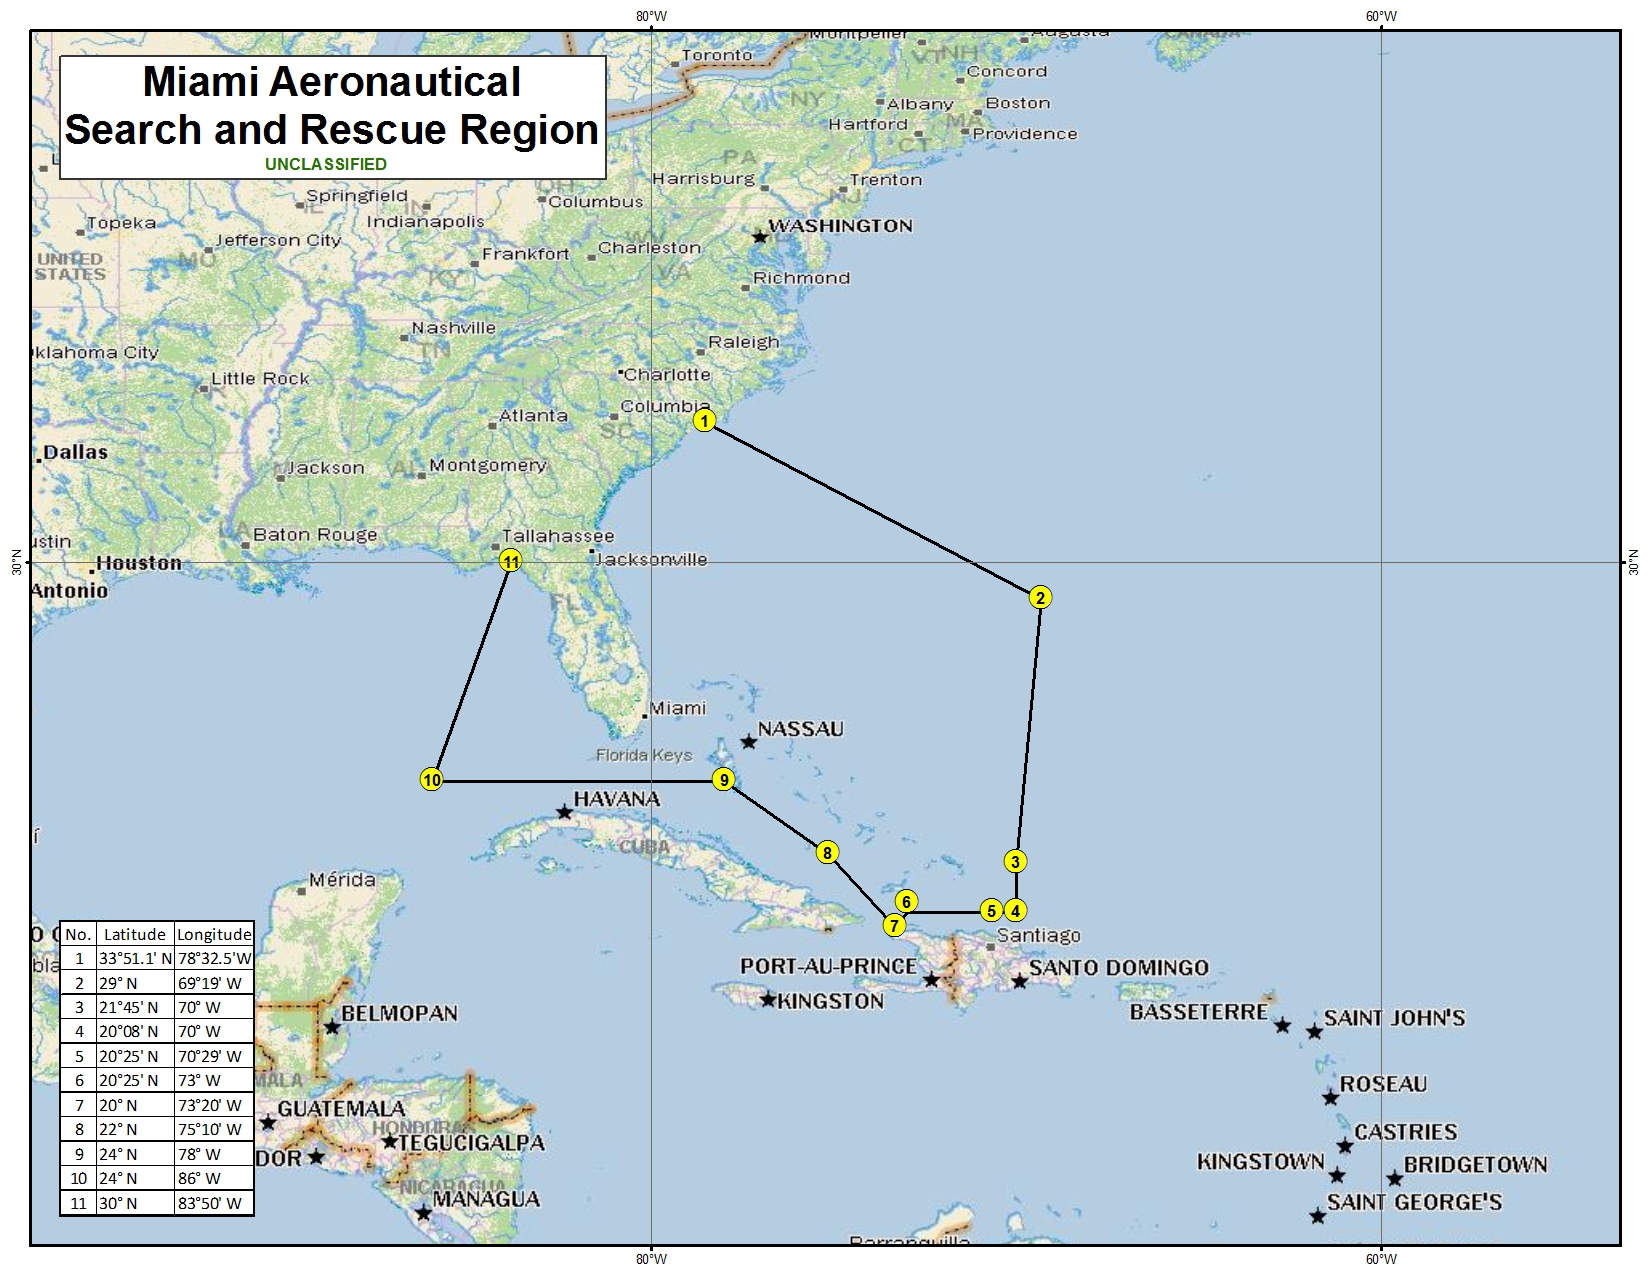 Miami Aeronautical Search and Rescue Region